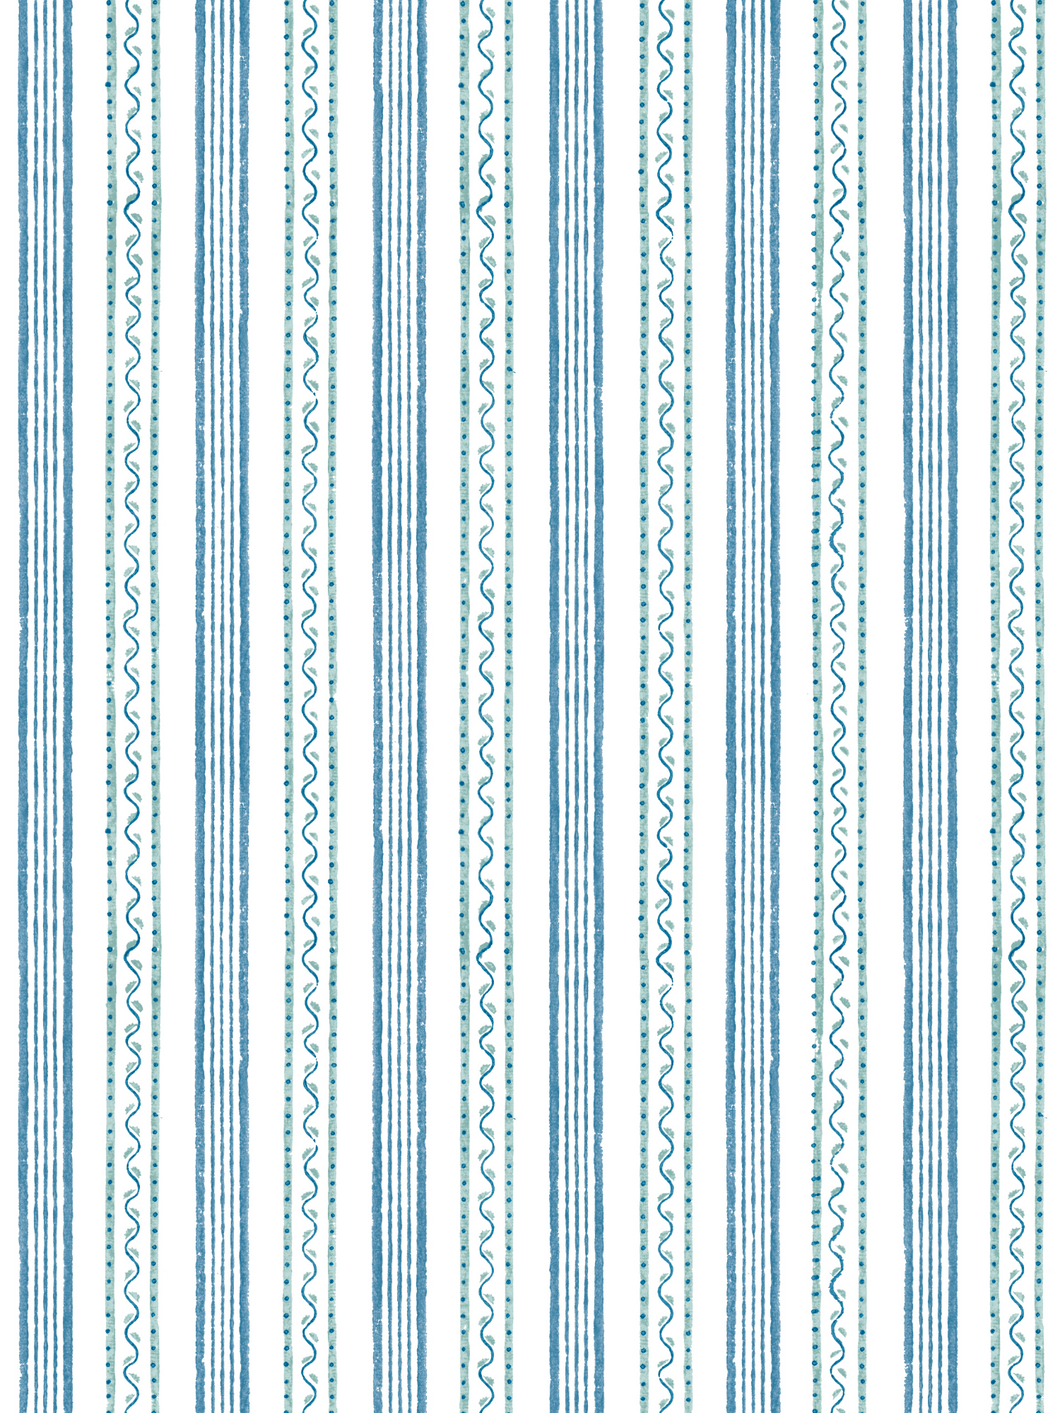 Dado Atelier Wiggle Stripe Blue wallpaper